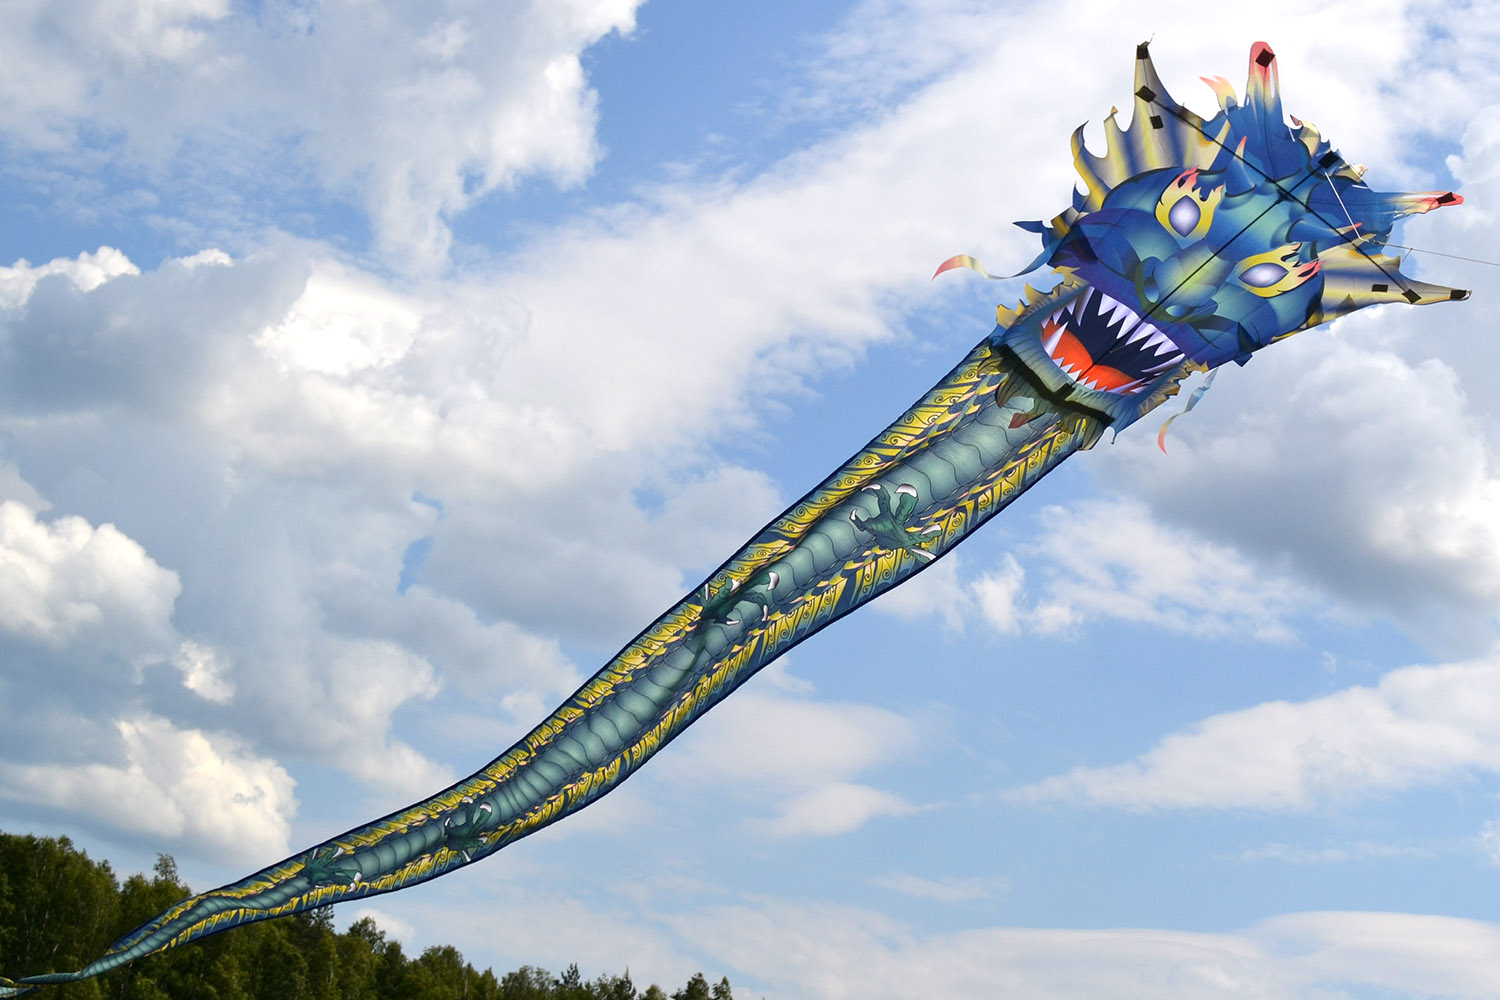  воздушный змей Изумрудный дракон от Фкайт